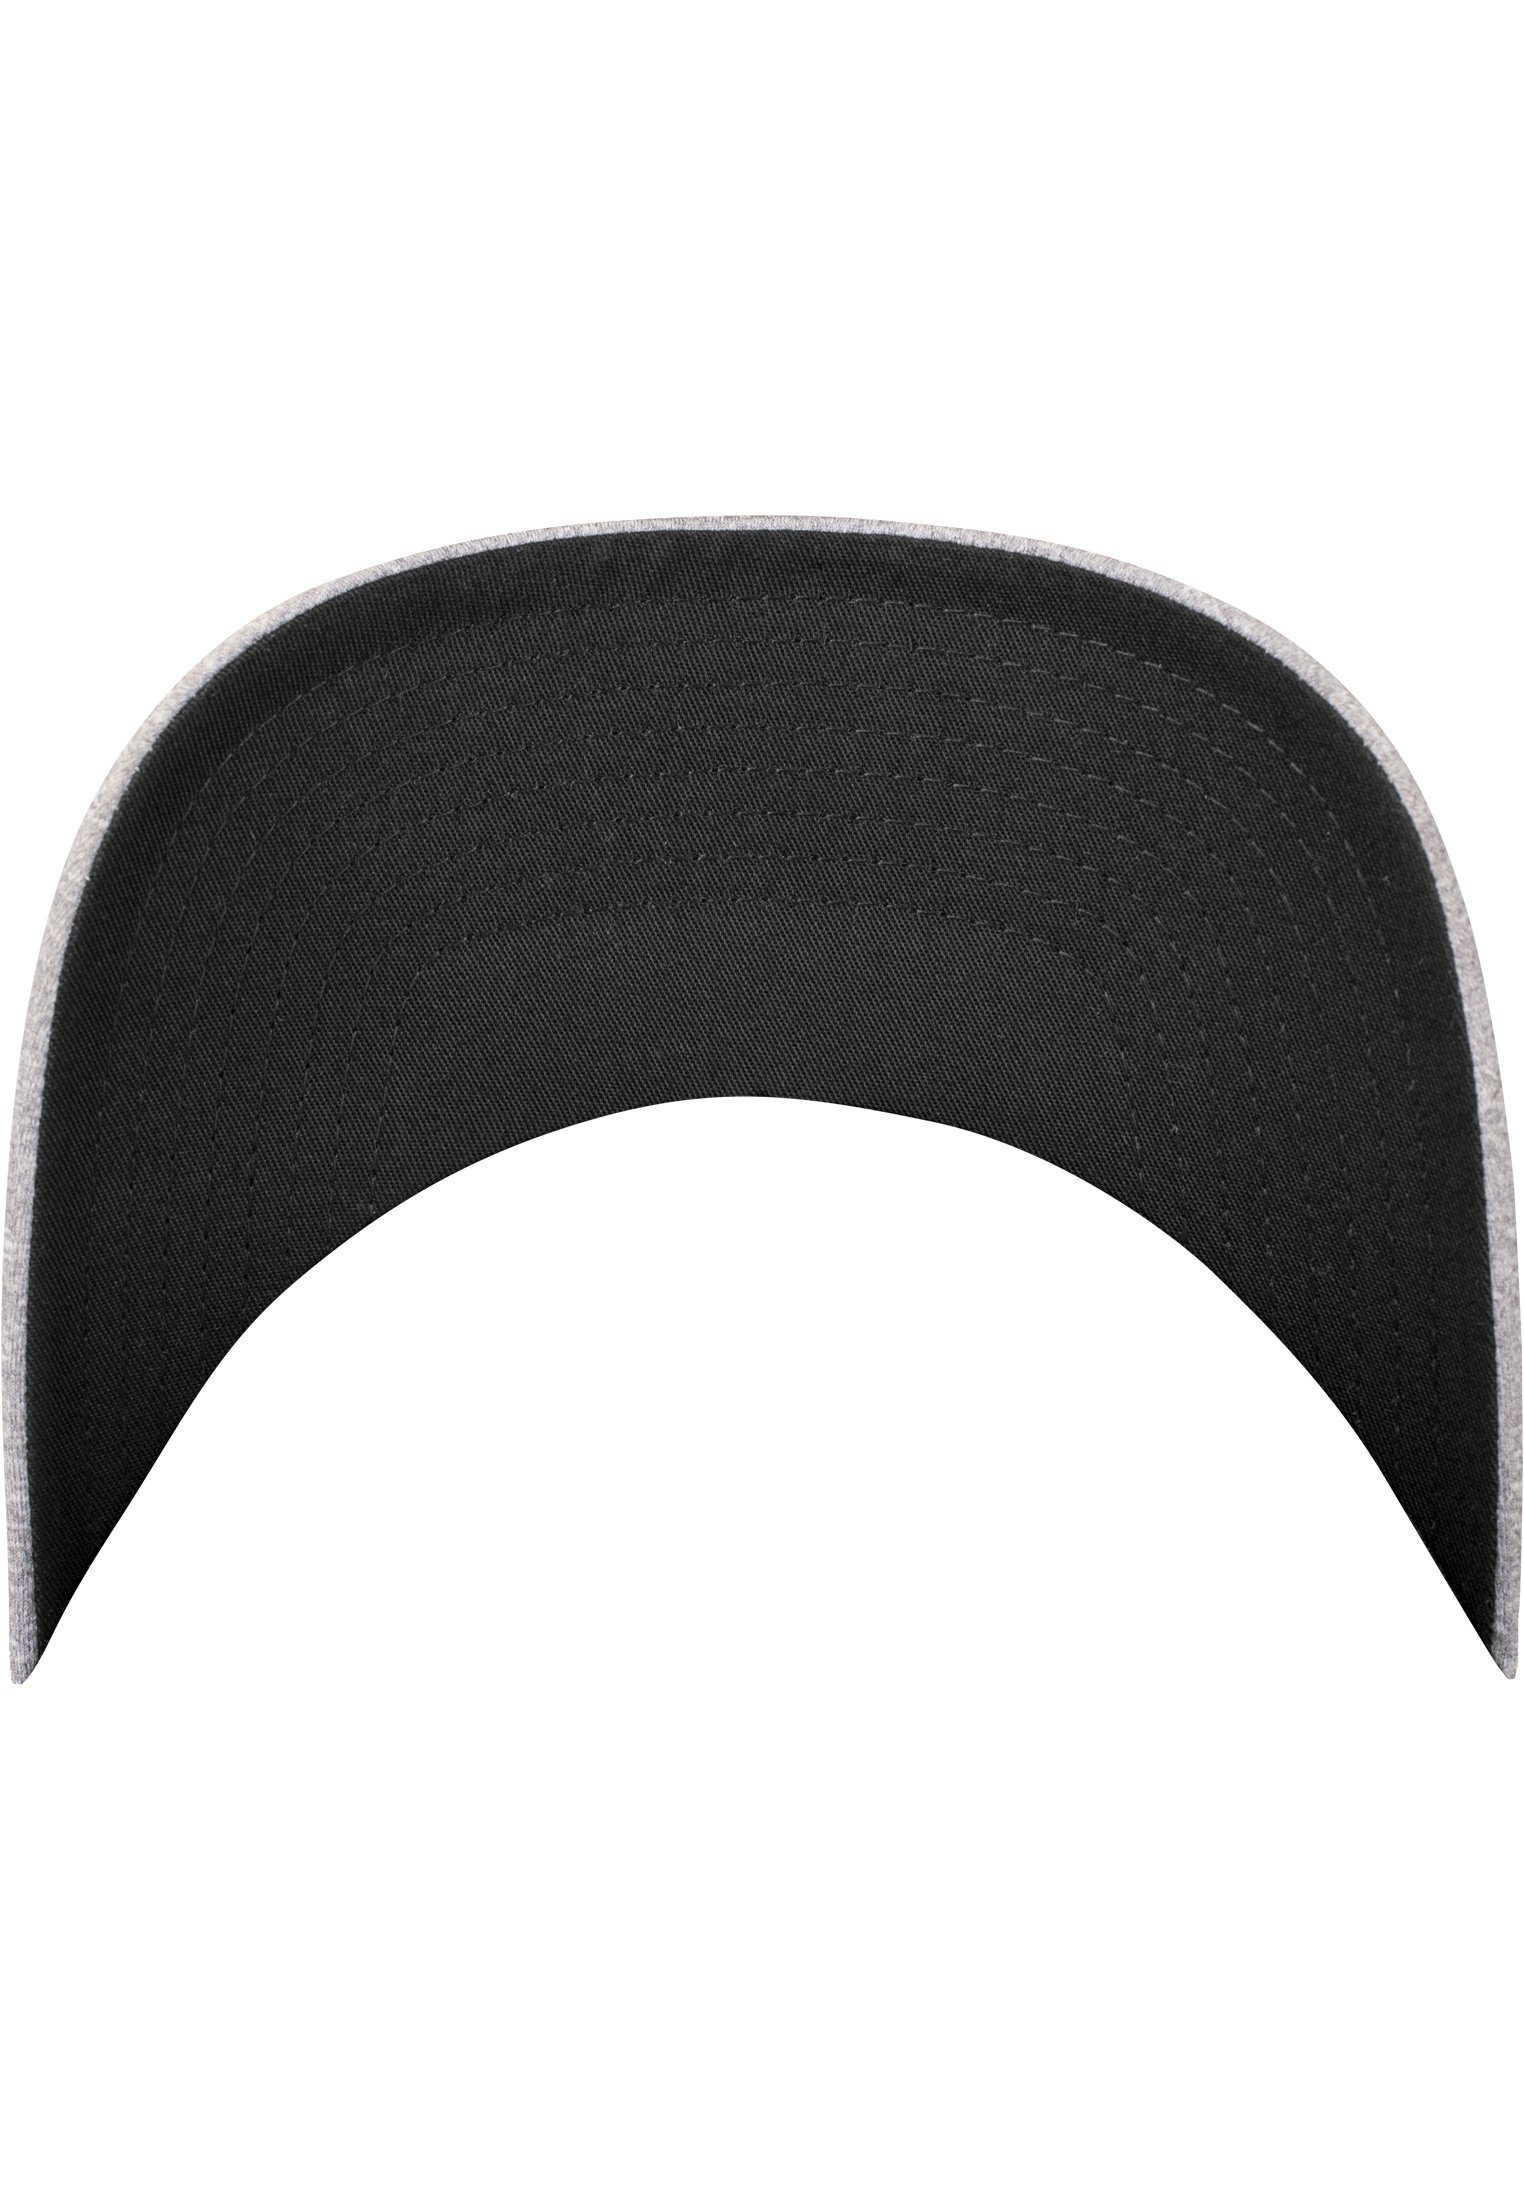 Flexfit Flex Mesh Flexfit Accessoires Melange heather/black Cap